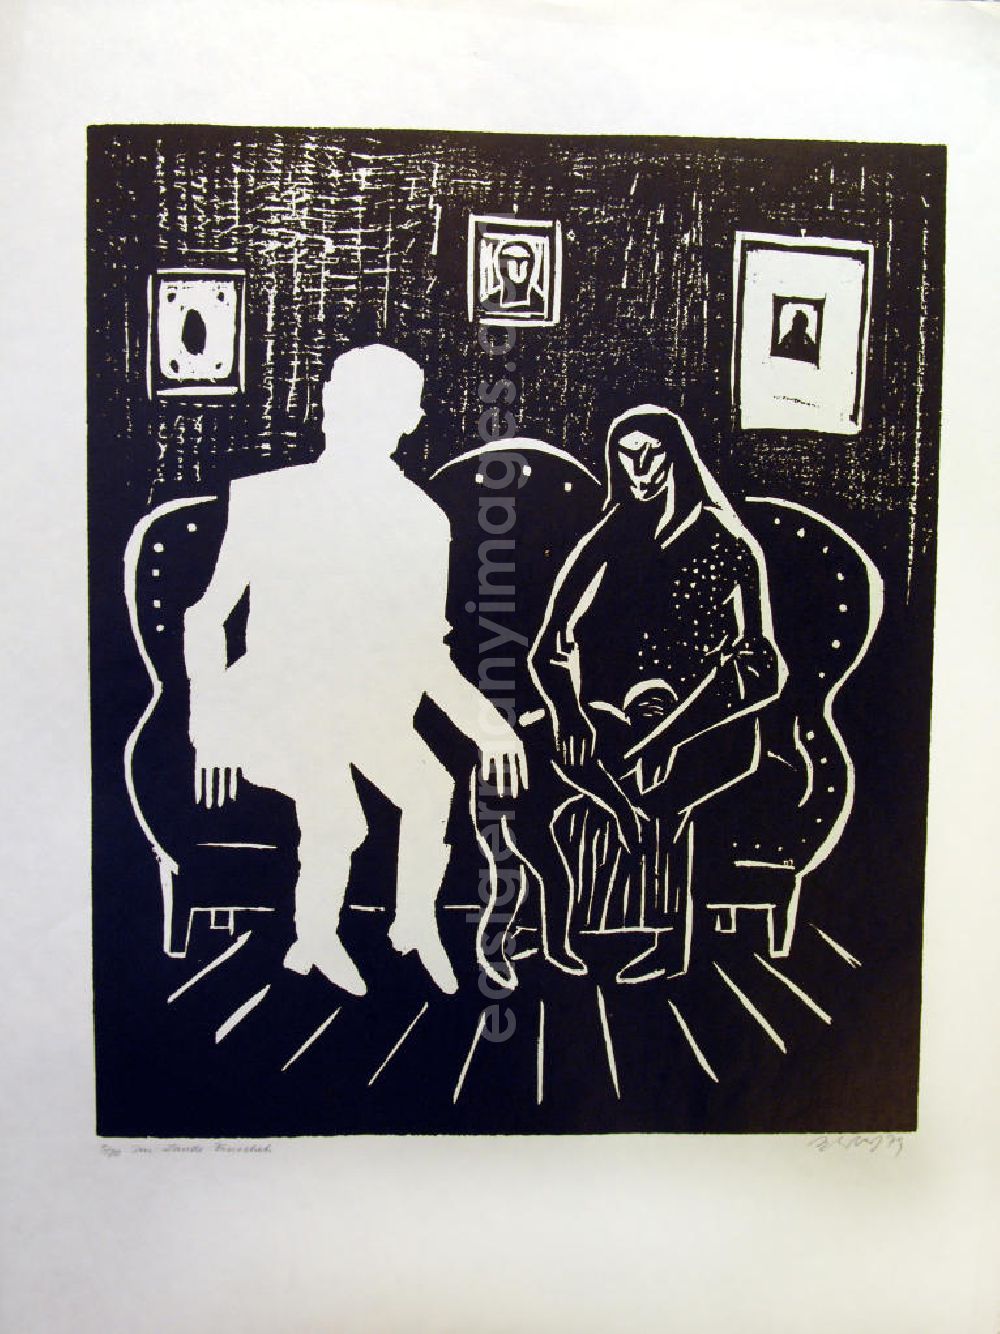 Berlin: Grafik von Herbert Sandberg Im Lande Pinochets aus dem Jahr 1979, 38,2x45,6cm Holzschnitt, handsigniert. In einem Zimmer mit Sofa, dahinter drei Bilder an der Wand; rechts auf der Couch: eine dunkle, grusleige Gestalt sitzt und hat ein Kind über das Knie gelegt, beide Hände berühren das Kind; links auf der Couch: schablonenhafte Figur sitzt, die eine Hand auf dem Kind.